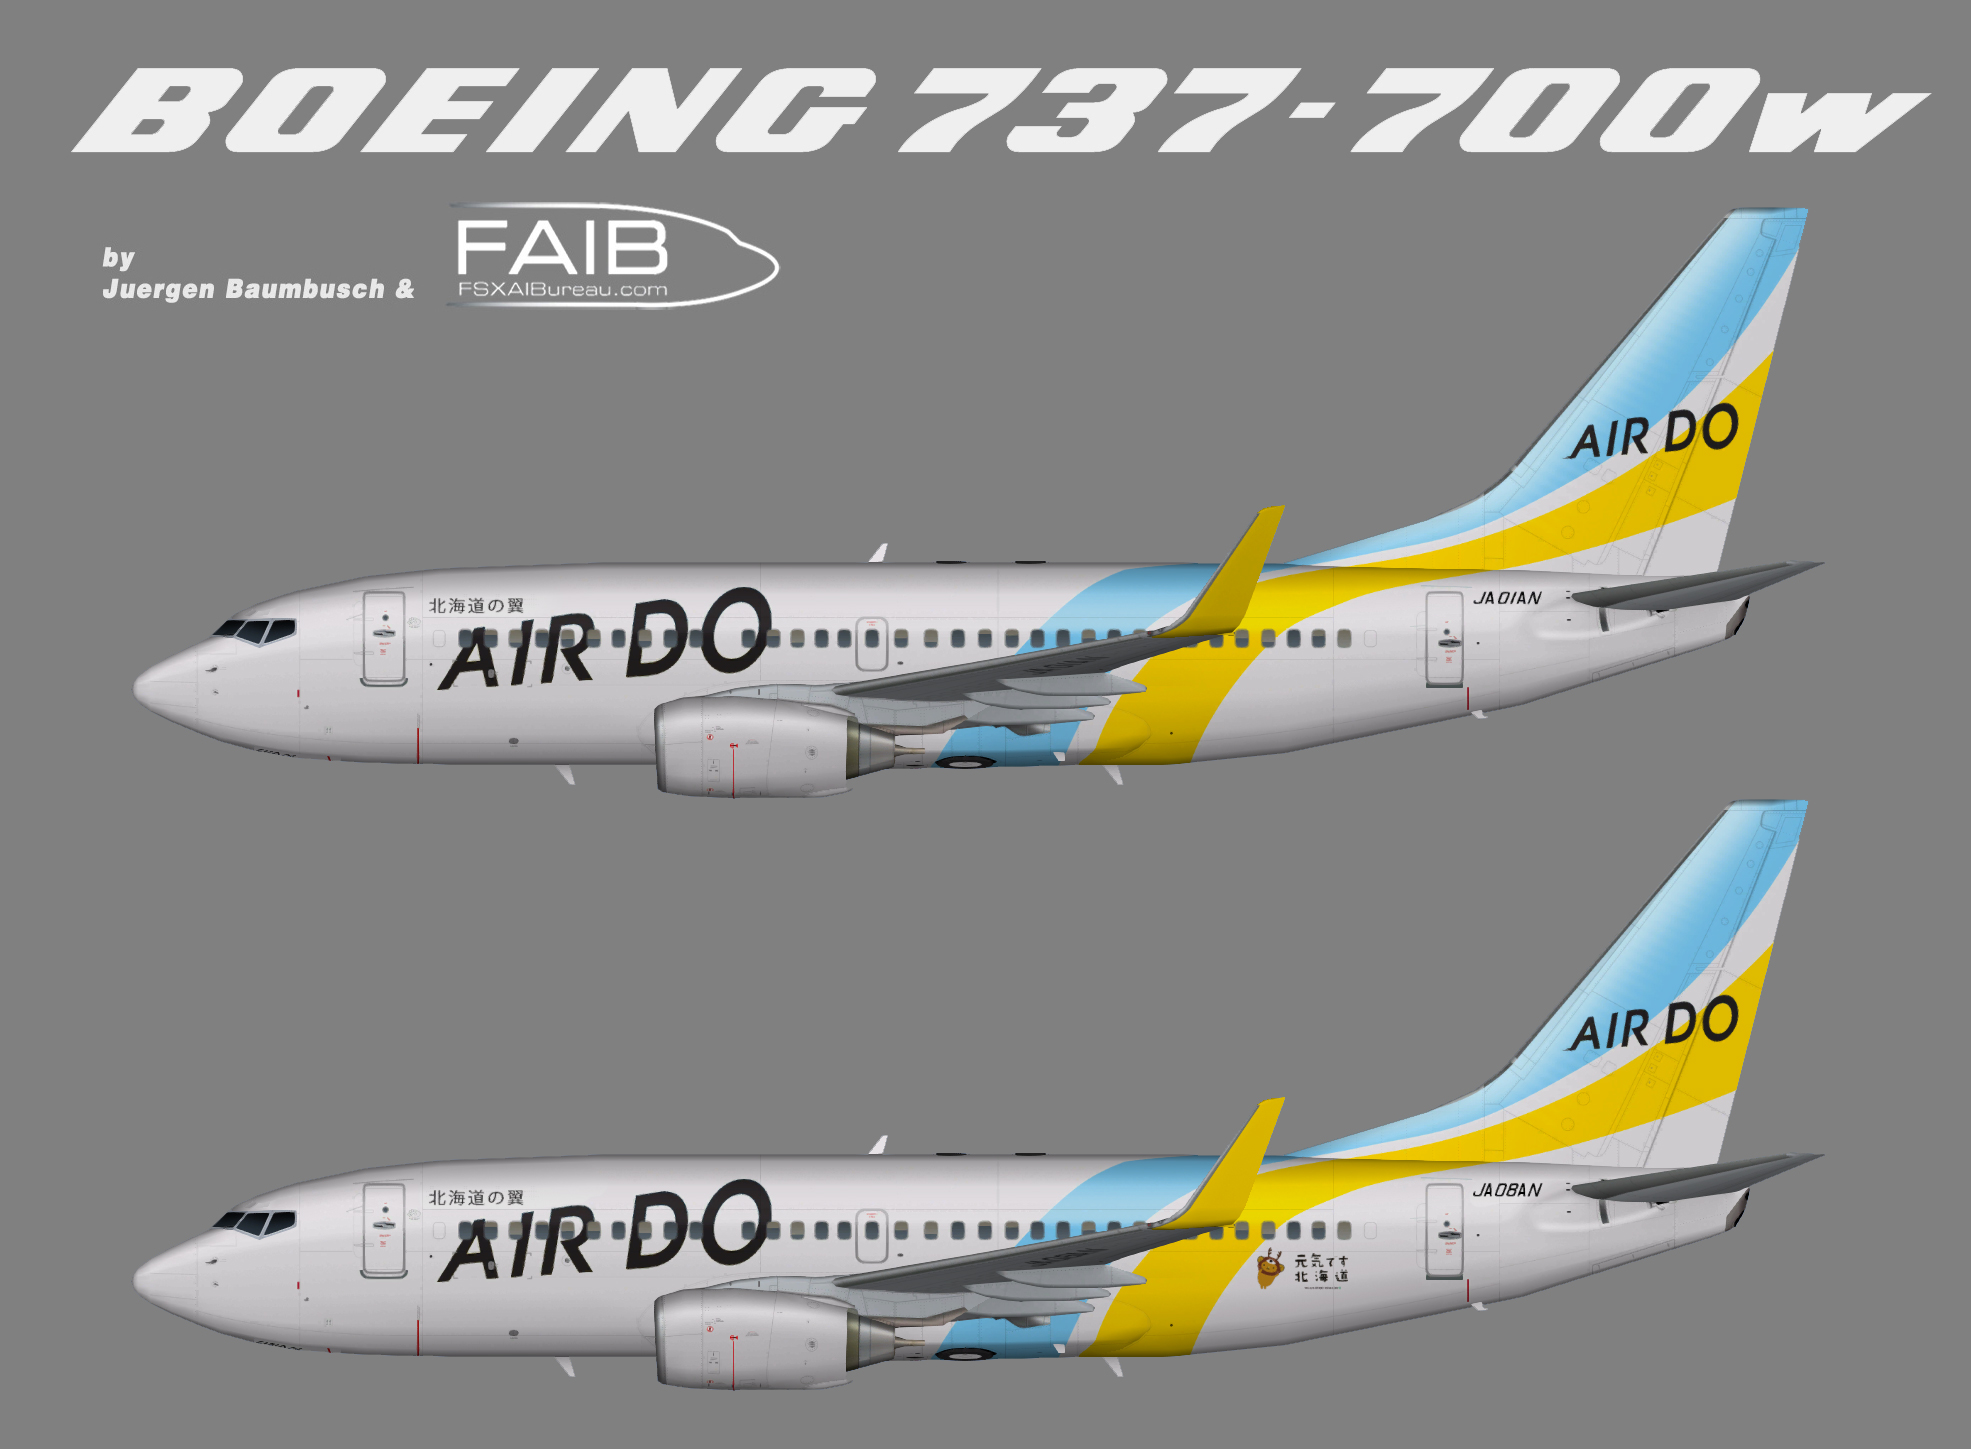 Air Do Boeing 737-700w